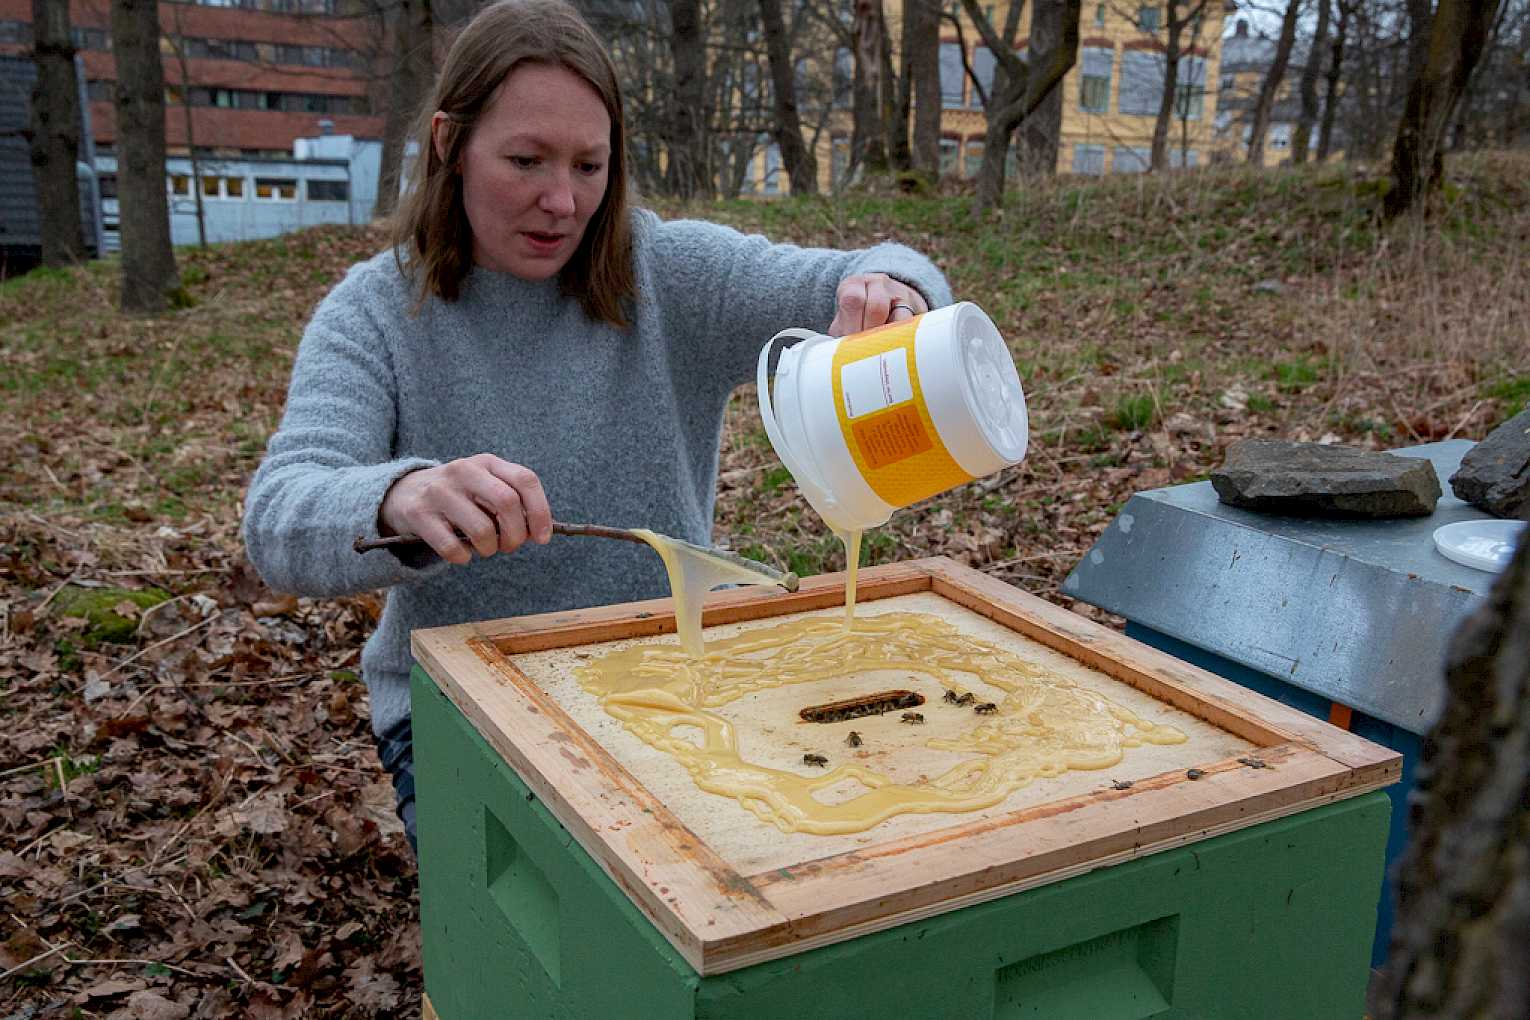 Det er mandag morgen midt i april – overskyet og småkaldt, og lite summing i kubene. Derfor må Linda Kristiansen, som har birøkt som hobby og eier en av kubene, hjelpe dem i gang med litt mat – honning, selvsagt.